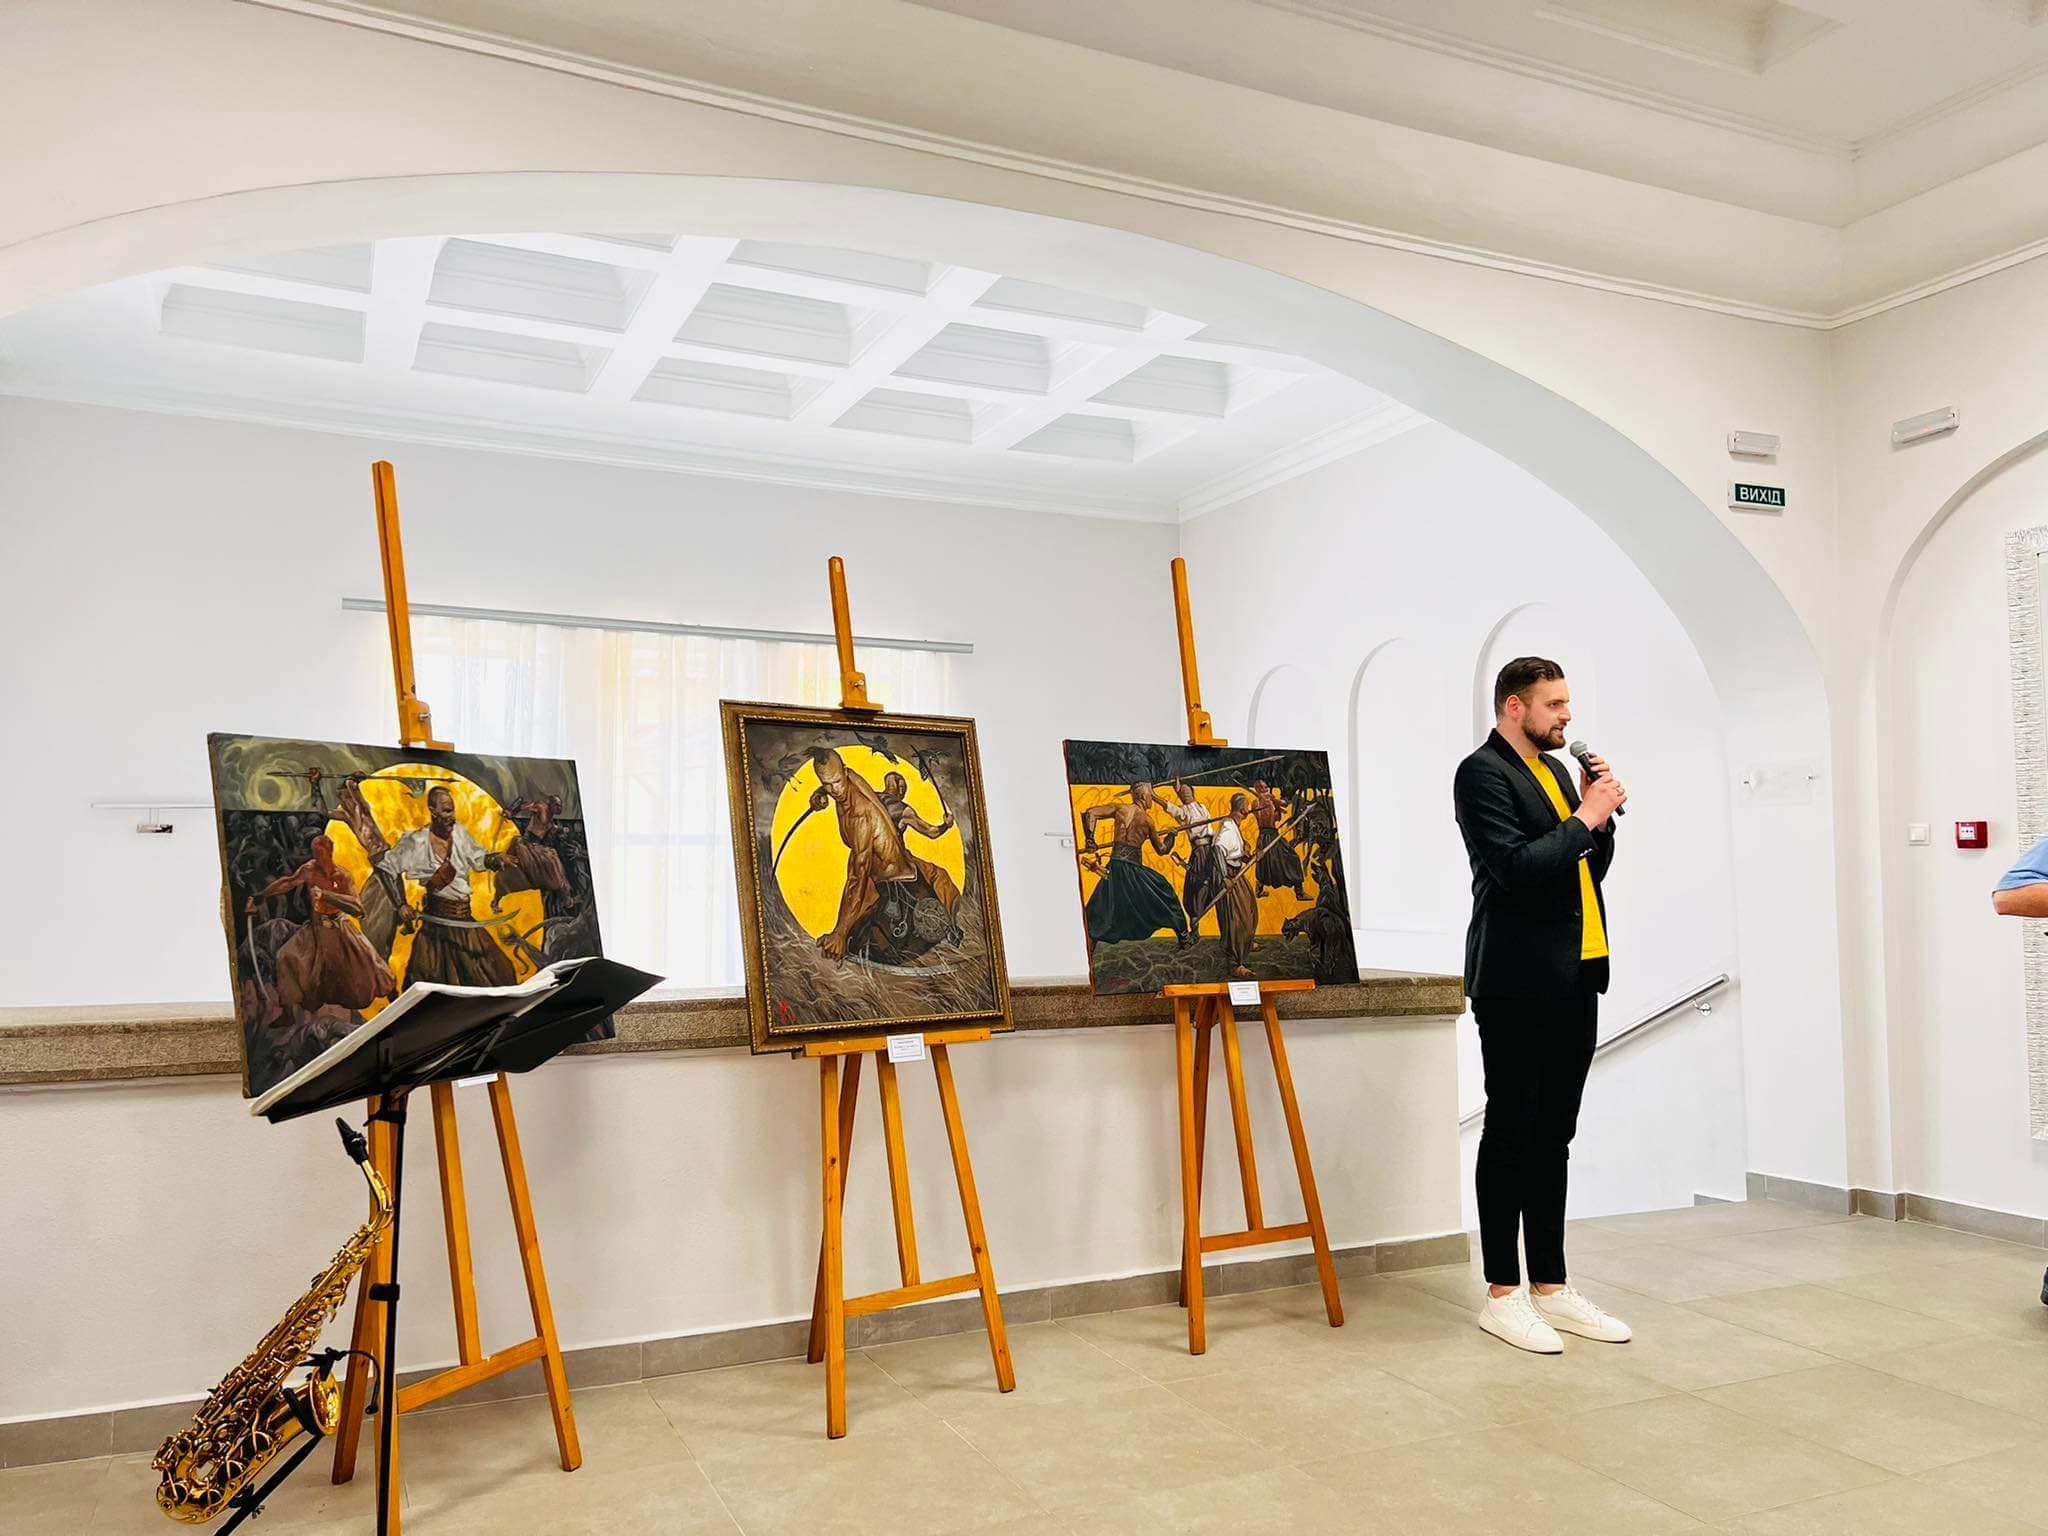 Війна очима дітей.. Сьогодні у Палаці культури та мистецтв відкрили виставку картин, присвячених війні. 